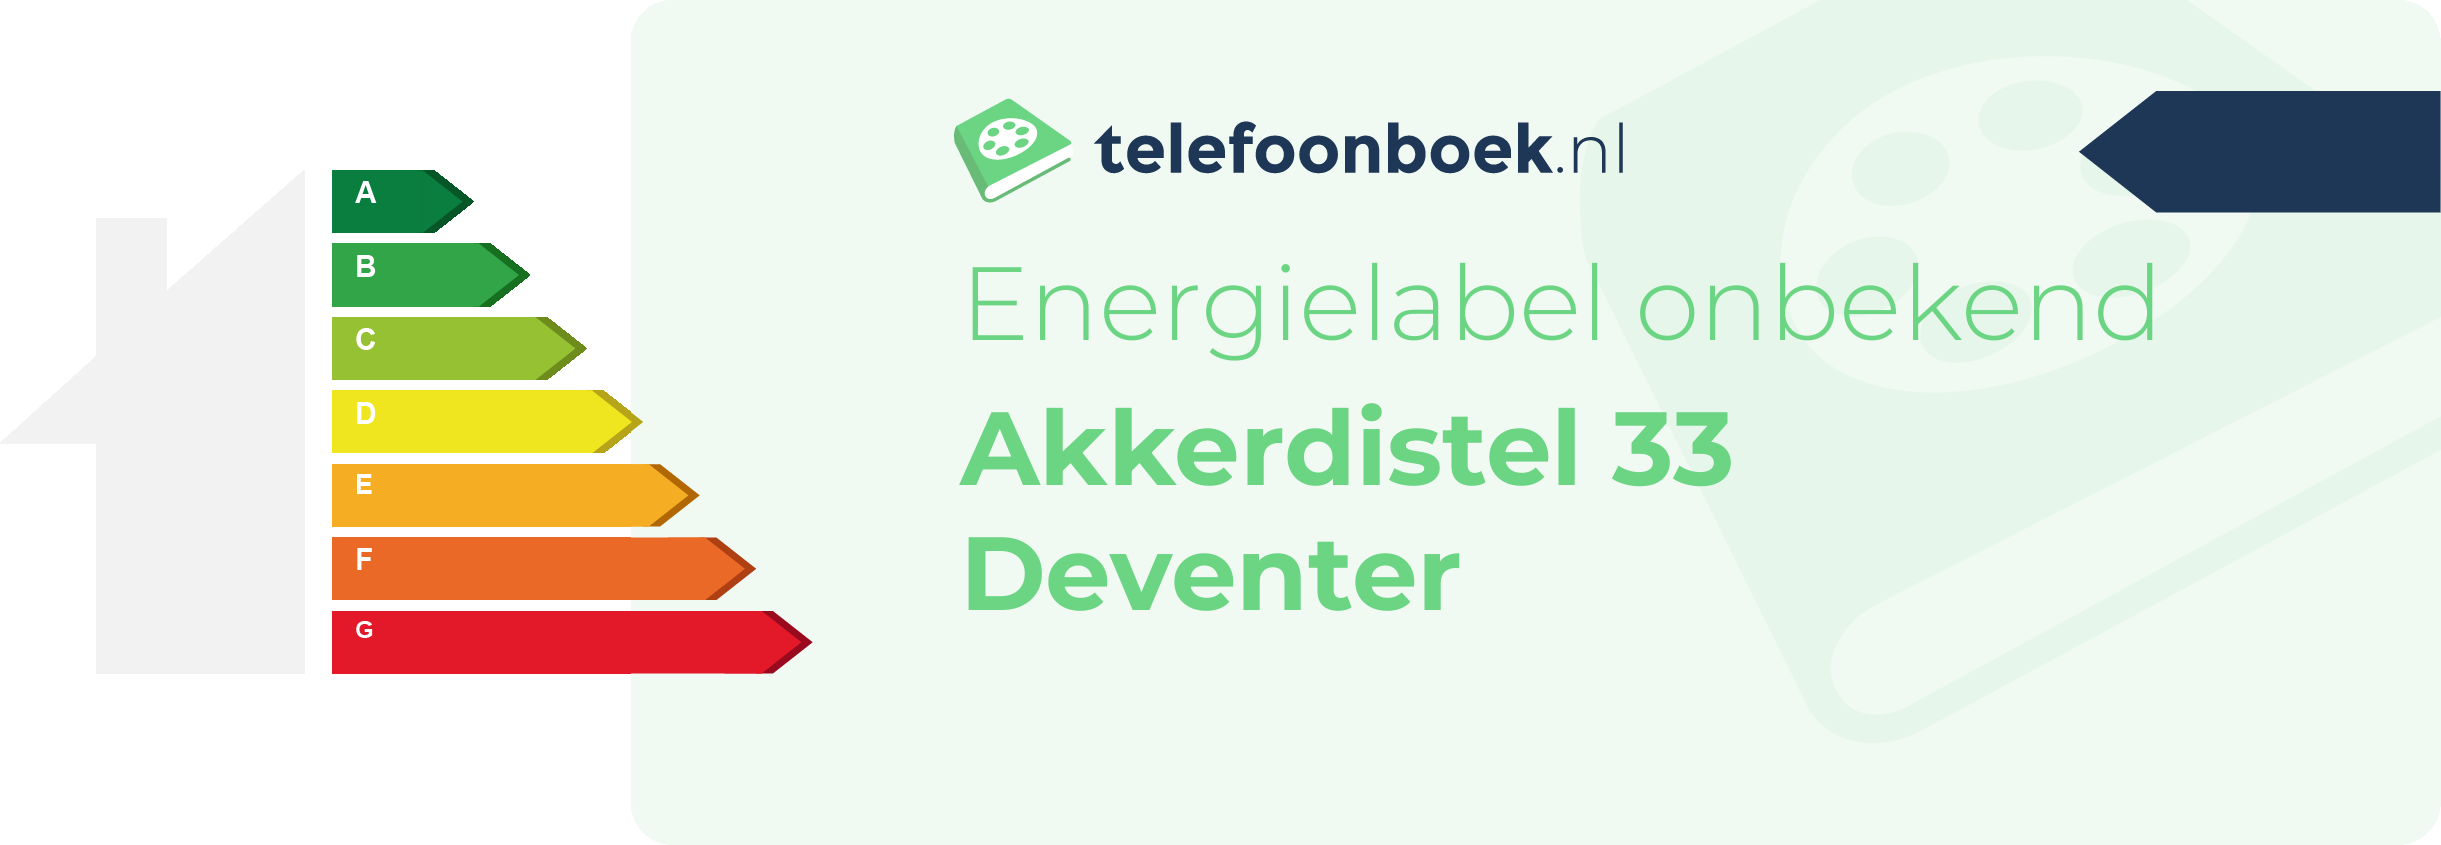 Energielabel Akkerdistel 33 Deventer